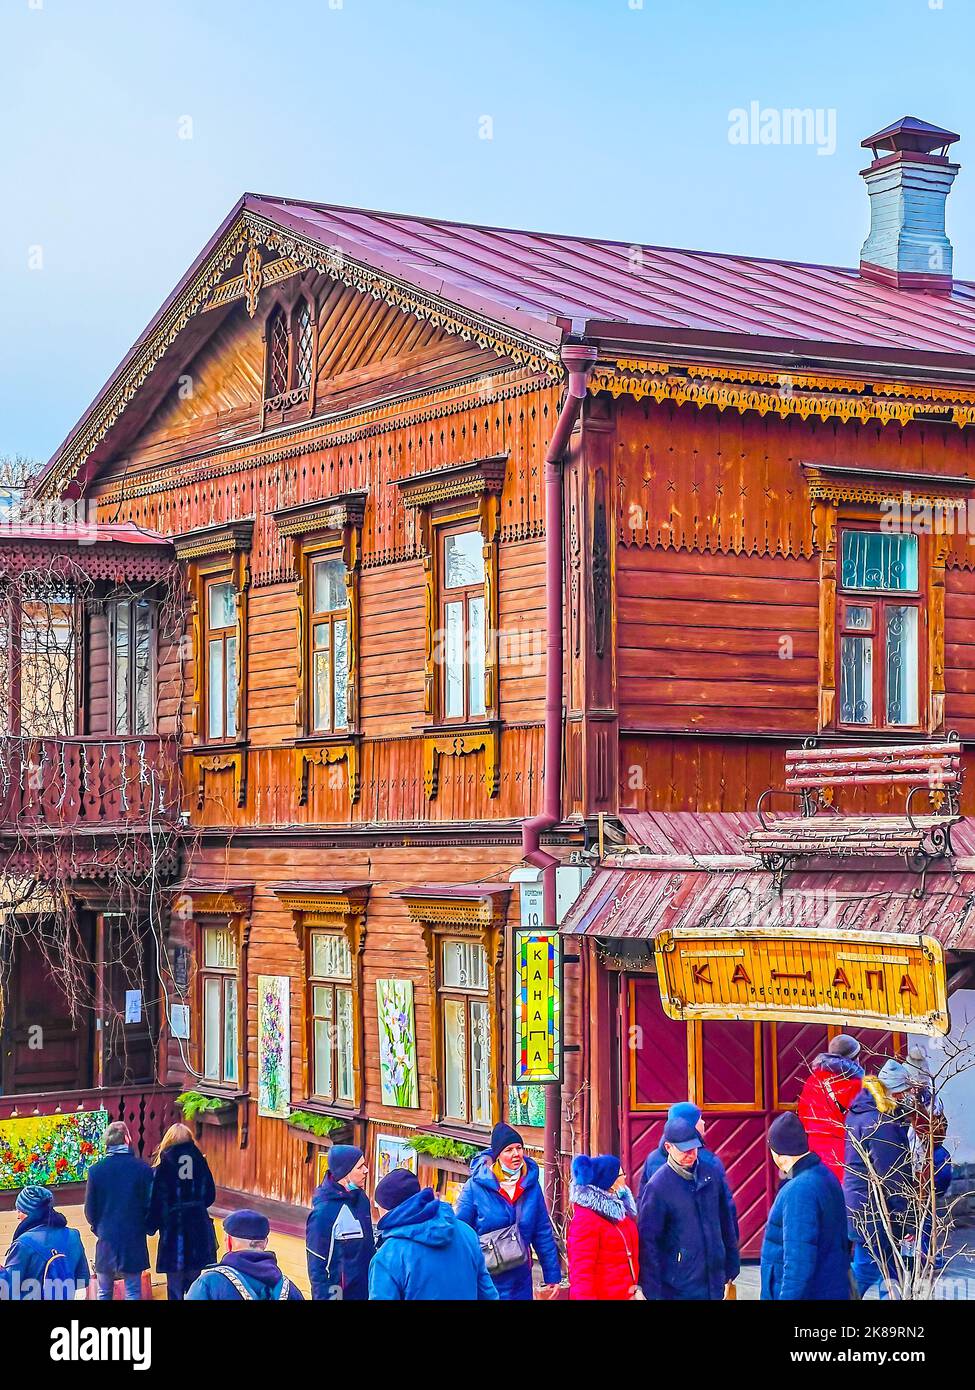 KIEV, UCRANIA - 2 DE ENERO de 2022: La histórica casa de madera del Descenso de Andrés sirvió como un popular restaurante turístico, el 2 de enero en Kiev, Ucrania Foto de stock